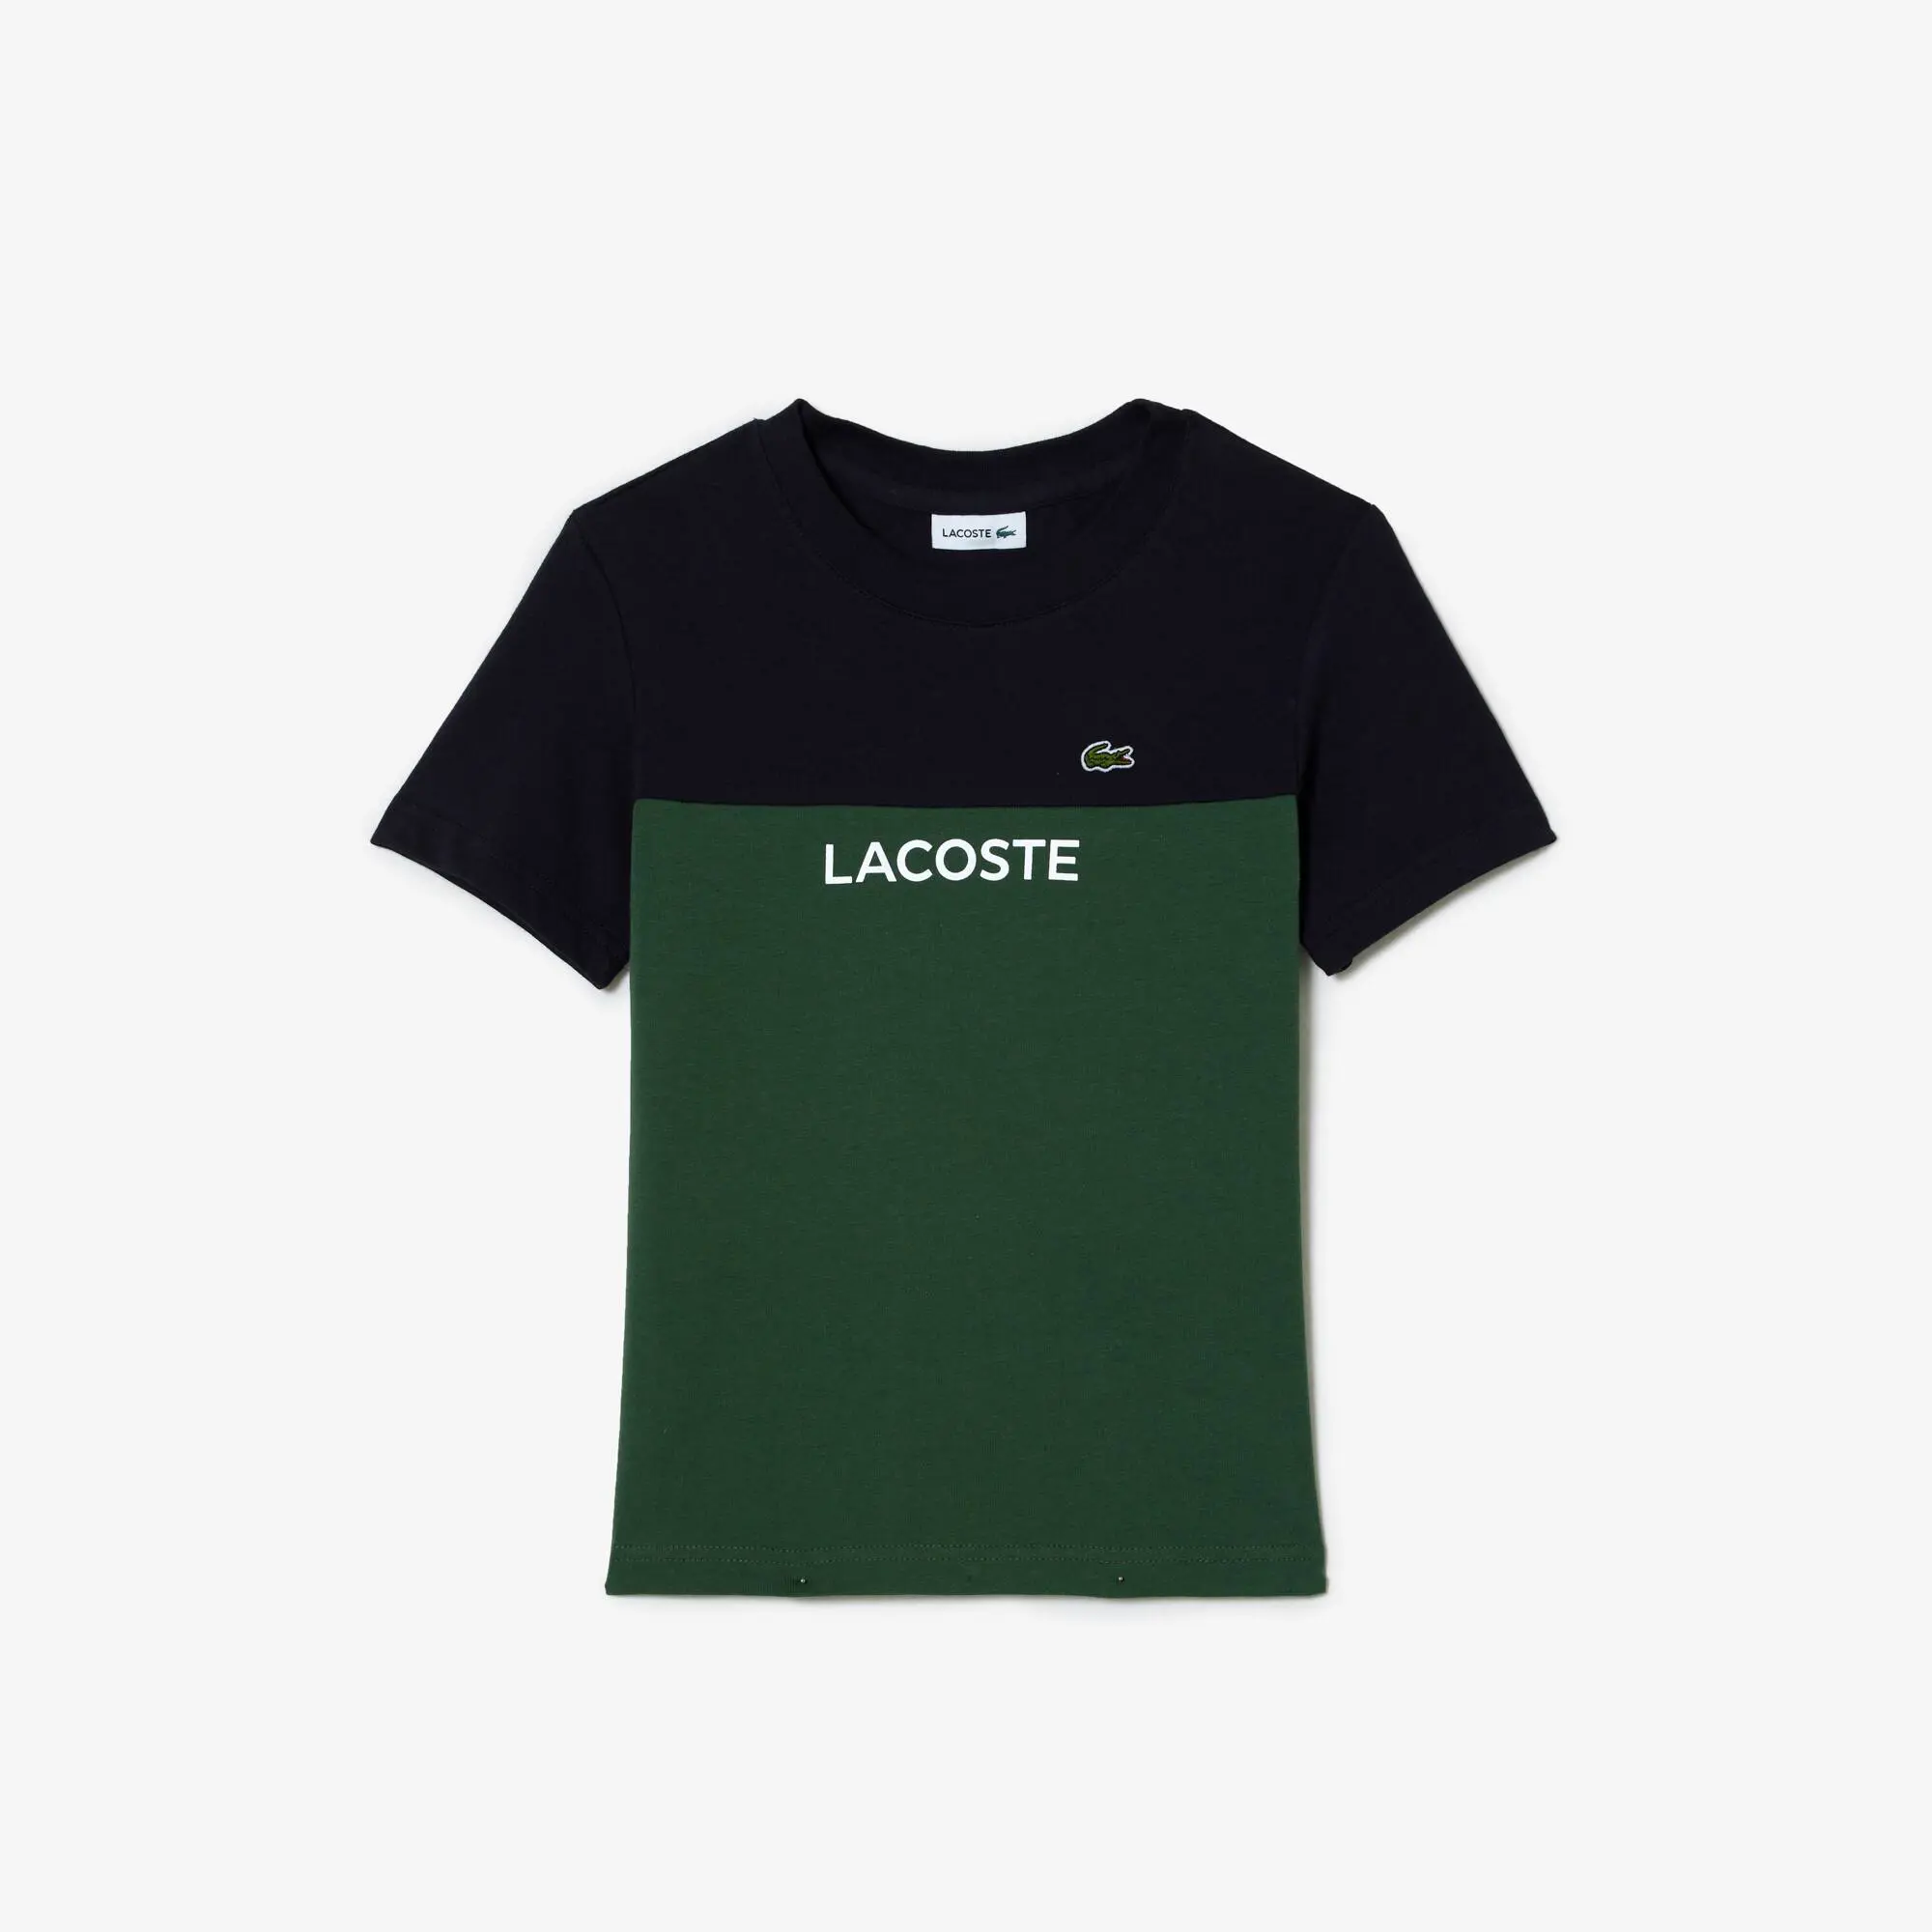 Lacoste Camiseta infantil Lacoste en punto de algodón ecológico color block. 1